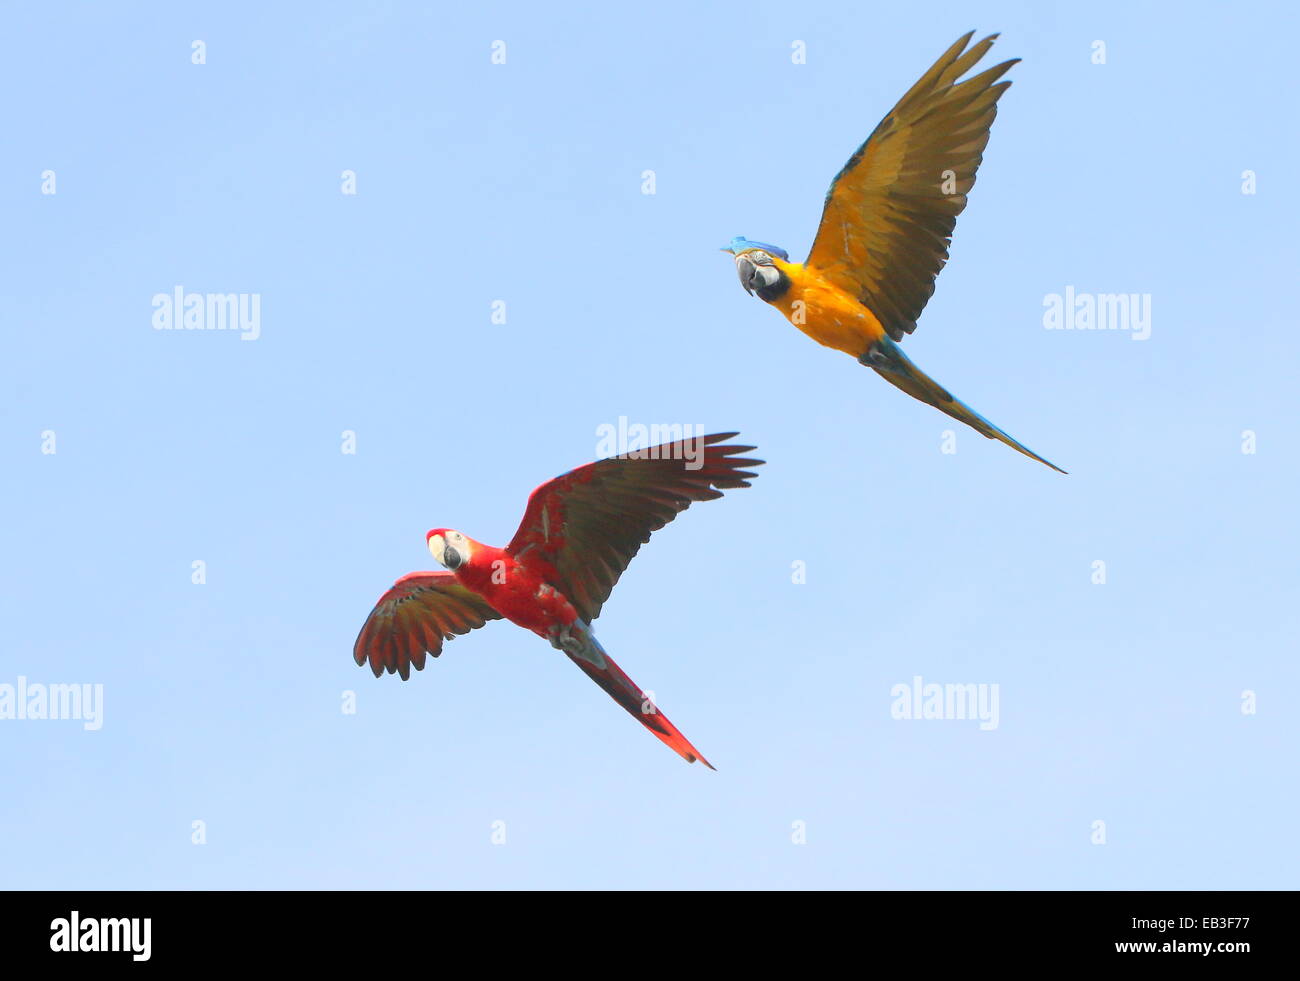 Ara bleu et jaune (Ara ararauna) en vol, rejoint par un ara rouge (Ara macao) Banque D'Images